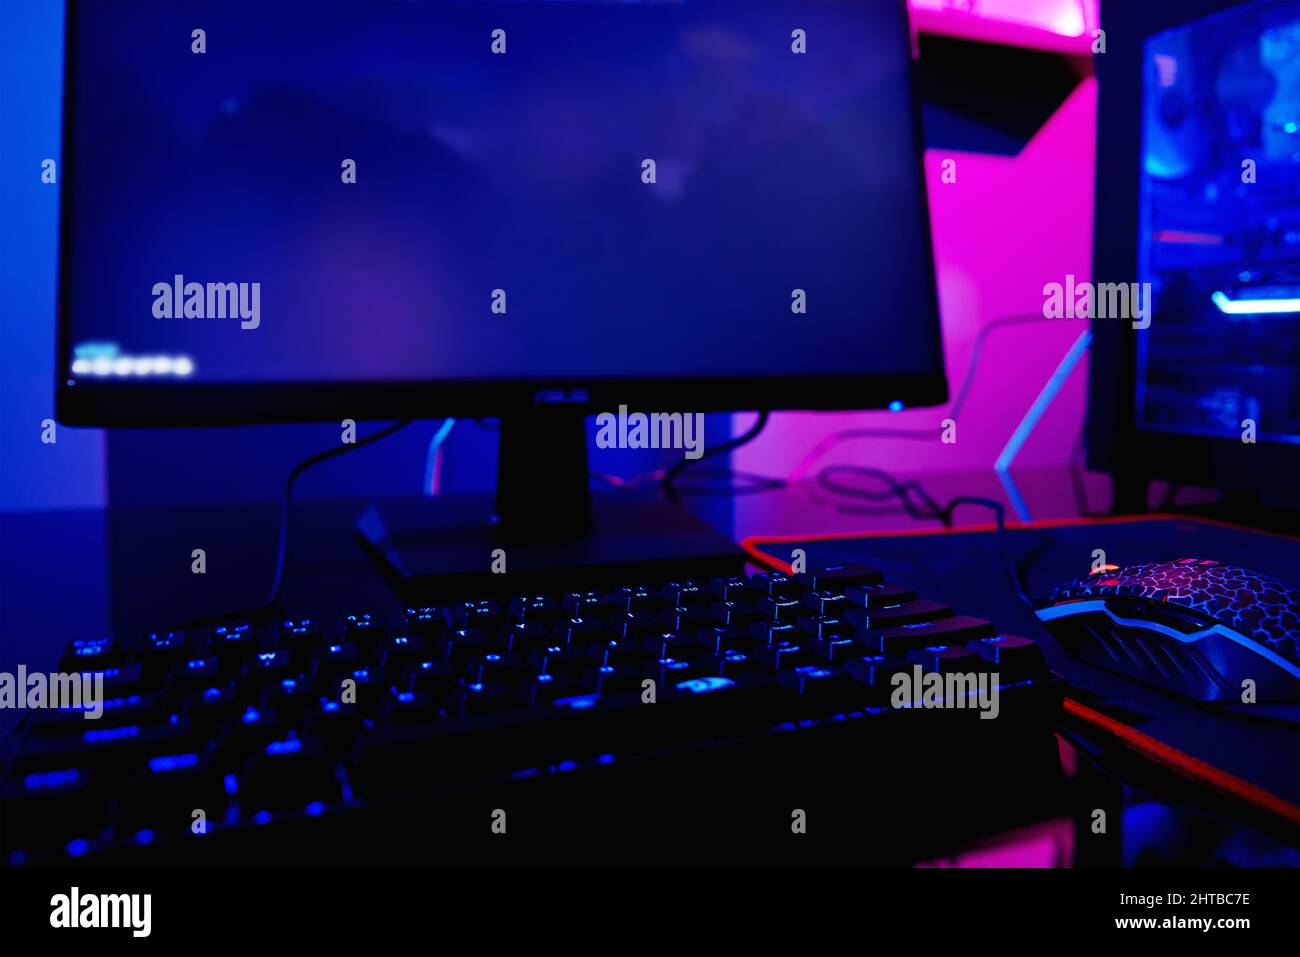 Bàn phím RGB cho máy tính chơi game với đèn neon giúp bạn dễ dàng điều khiển trò chơi yêu thích của mình. Ánh sáng neon pha trộn với các màu sắc sẽ giúp cho bạn có một trải nghiệm gaming tuyệt vời và cực kỳ thú vị. 